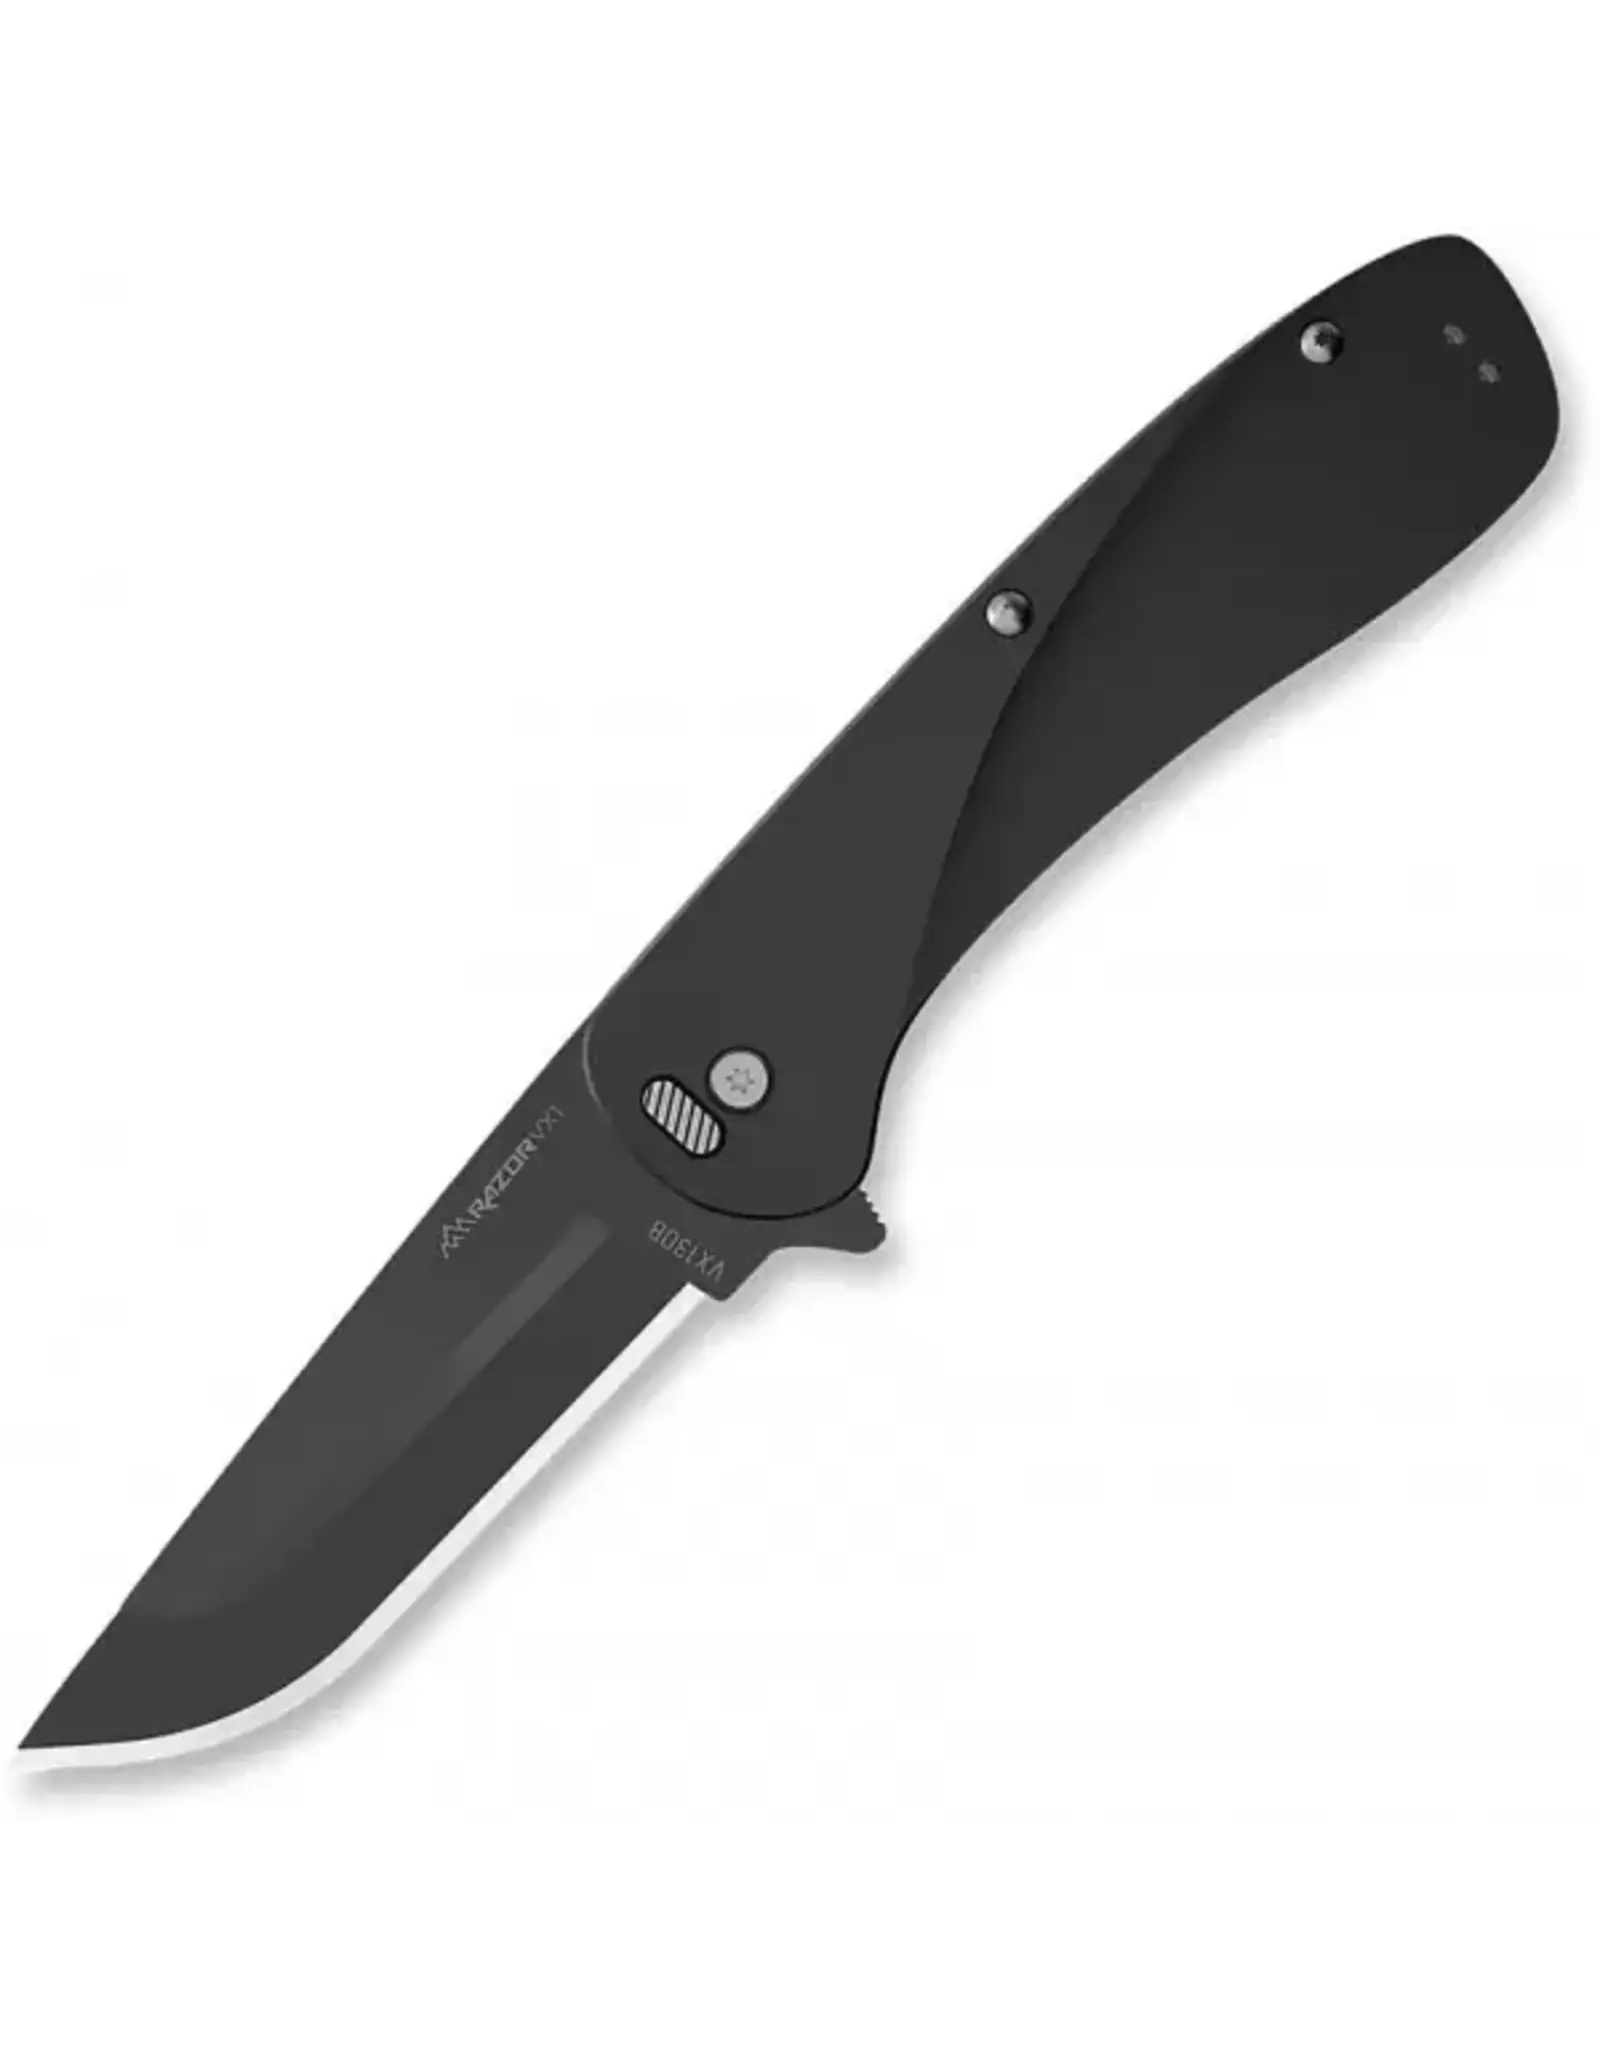 Outdoor Edge Outdoor Edge Razor Vx1 Linerlock Black knives BRK-OEVX130B